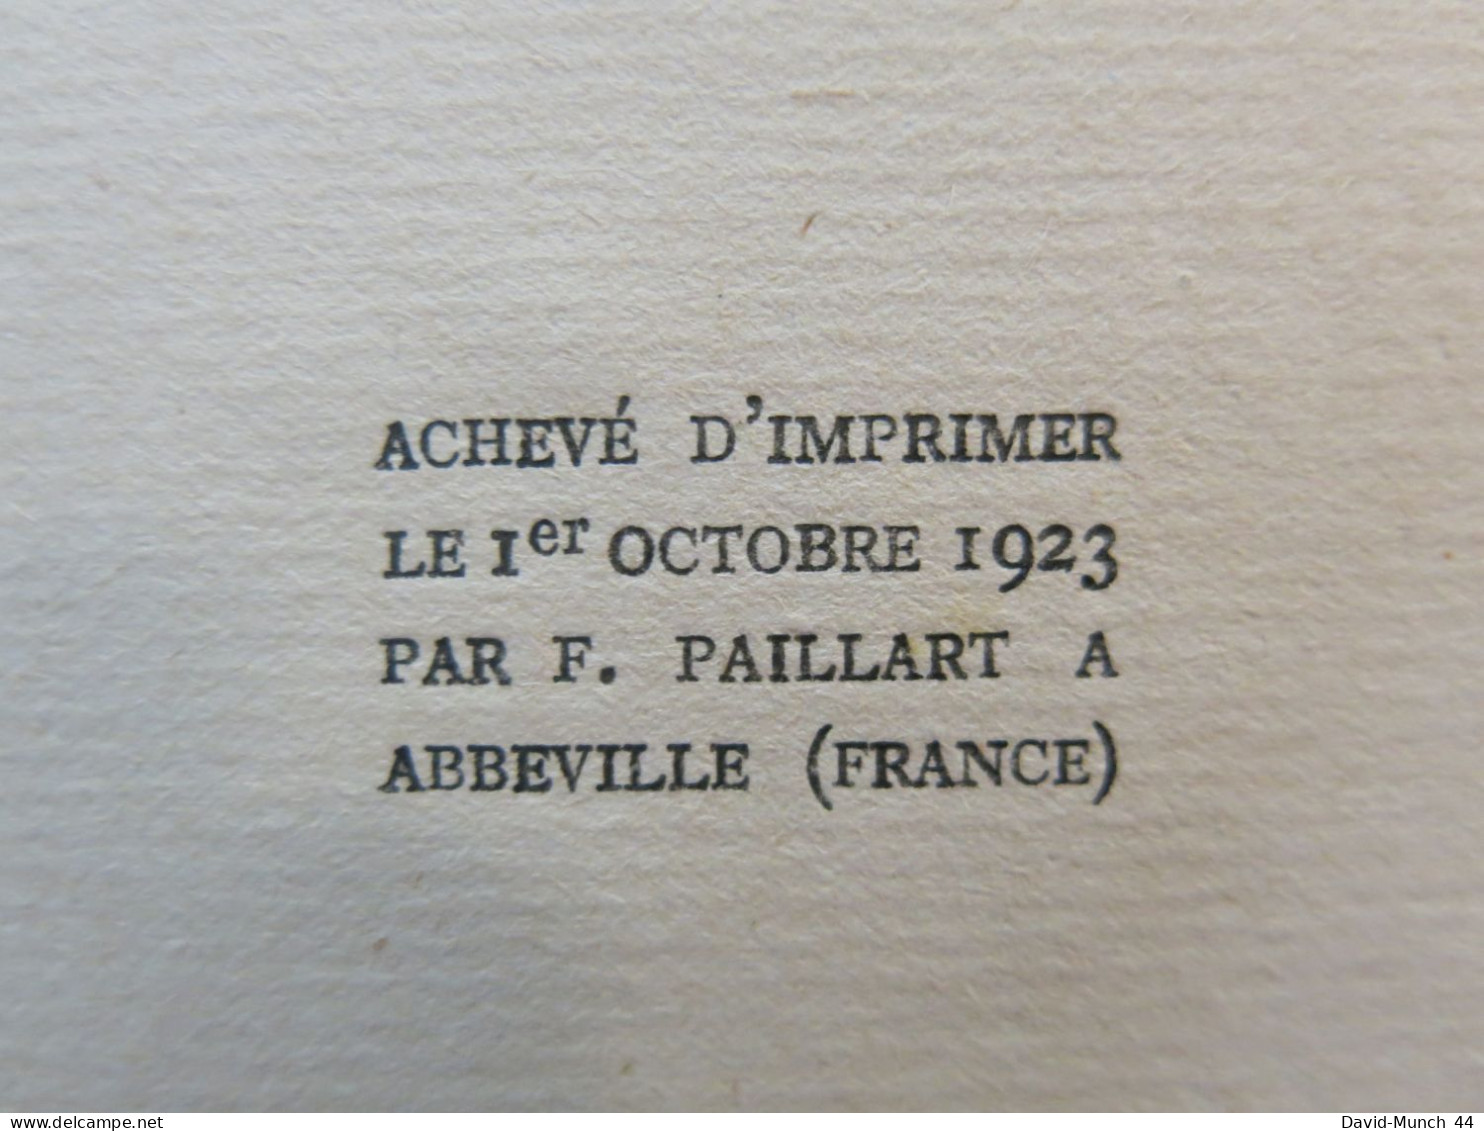 La fleur d'or comte du Conte de Gobineau. Librairie Grasset , "Les cahiers verts"-27. 1923,exemplaire sur Vergé Bouffant